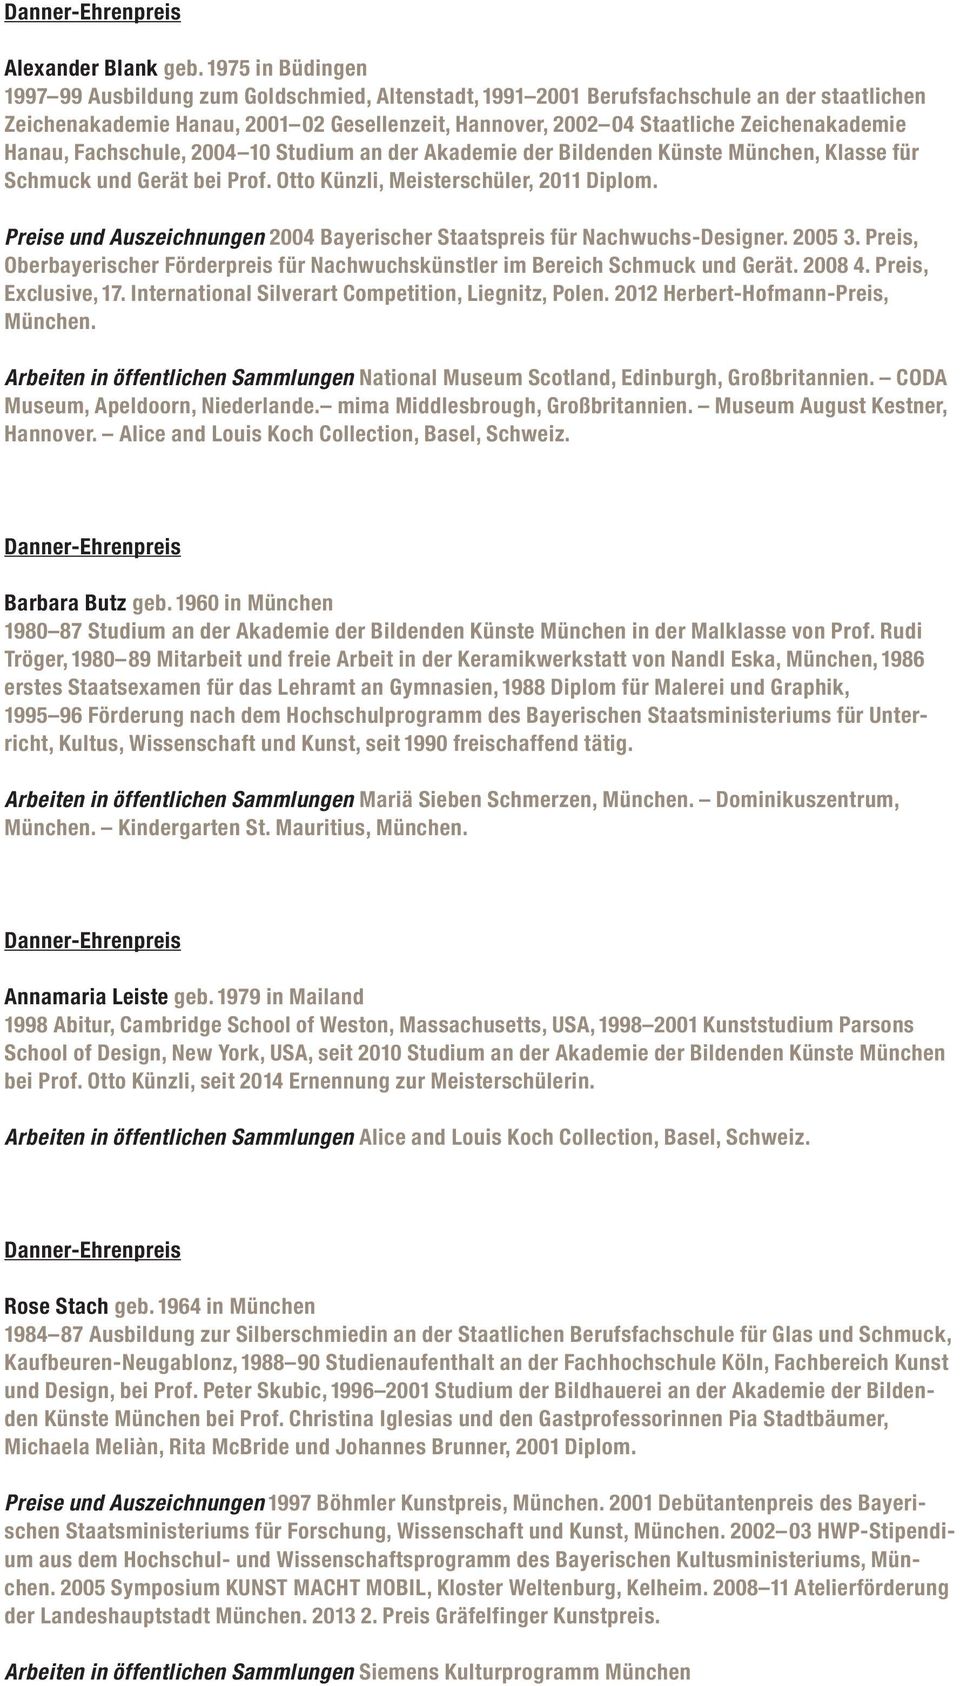 Zeichenakademie Hanau, Fachschule, 2004 10 Studium an der Akademie der Bildenden Künste München, Klasse für Schmuck und Gerät bei Prof. Otto Künzli, Meisterschüler, 2011 Diplom.